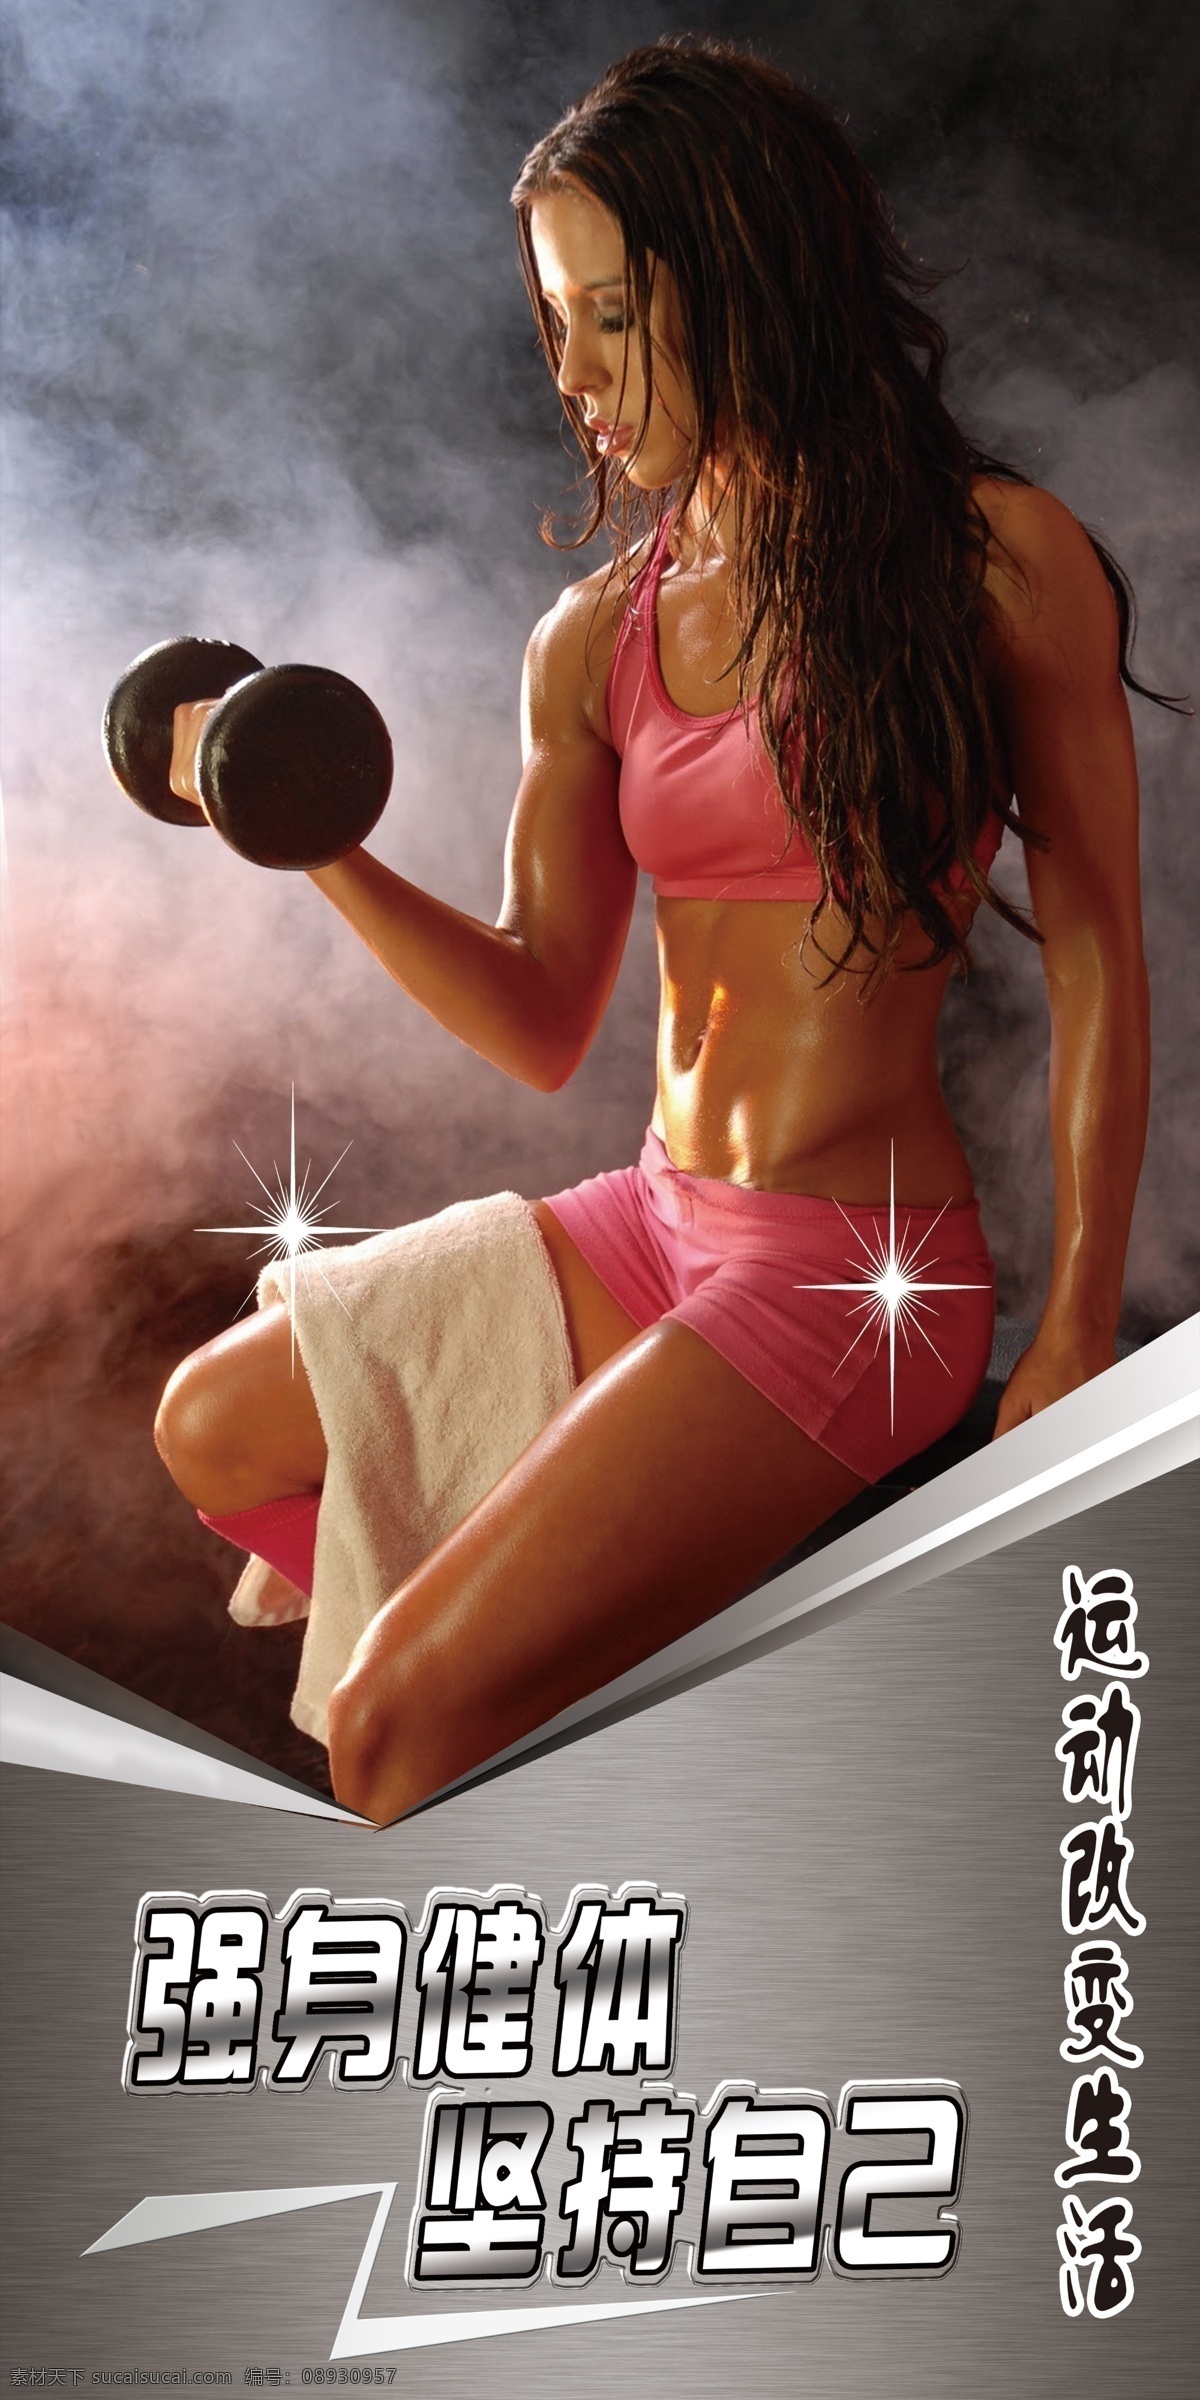 美女健身海报 美女健身图 美女健身 健身房海报 健身房 分层